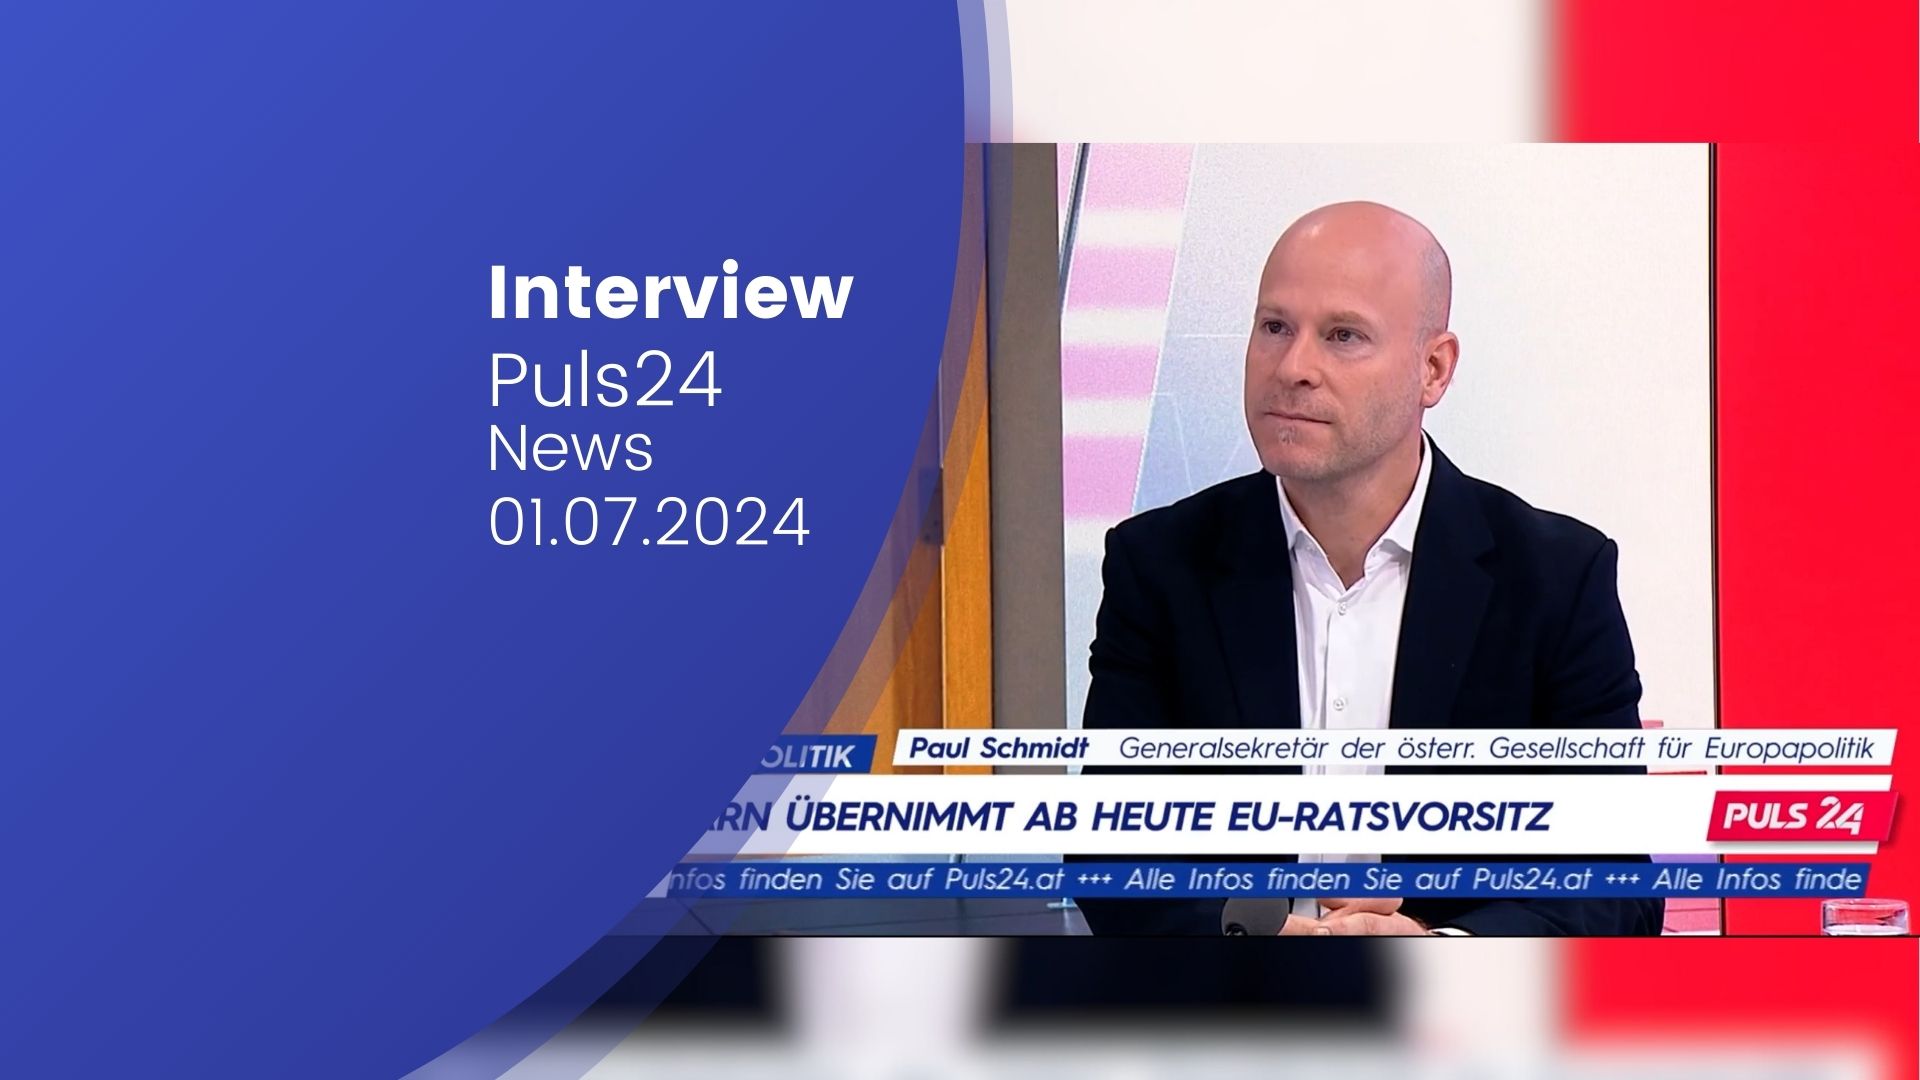 Paul Schmidt im Puls24 News Interview zum Thema "Ungarn übernimmt EU-Ratsvorsitz"